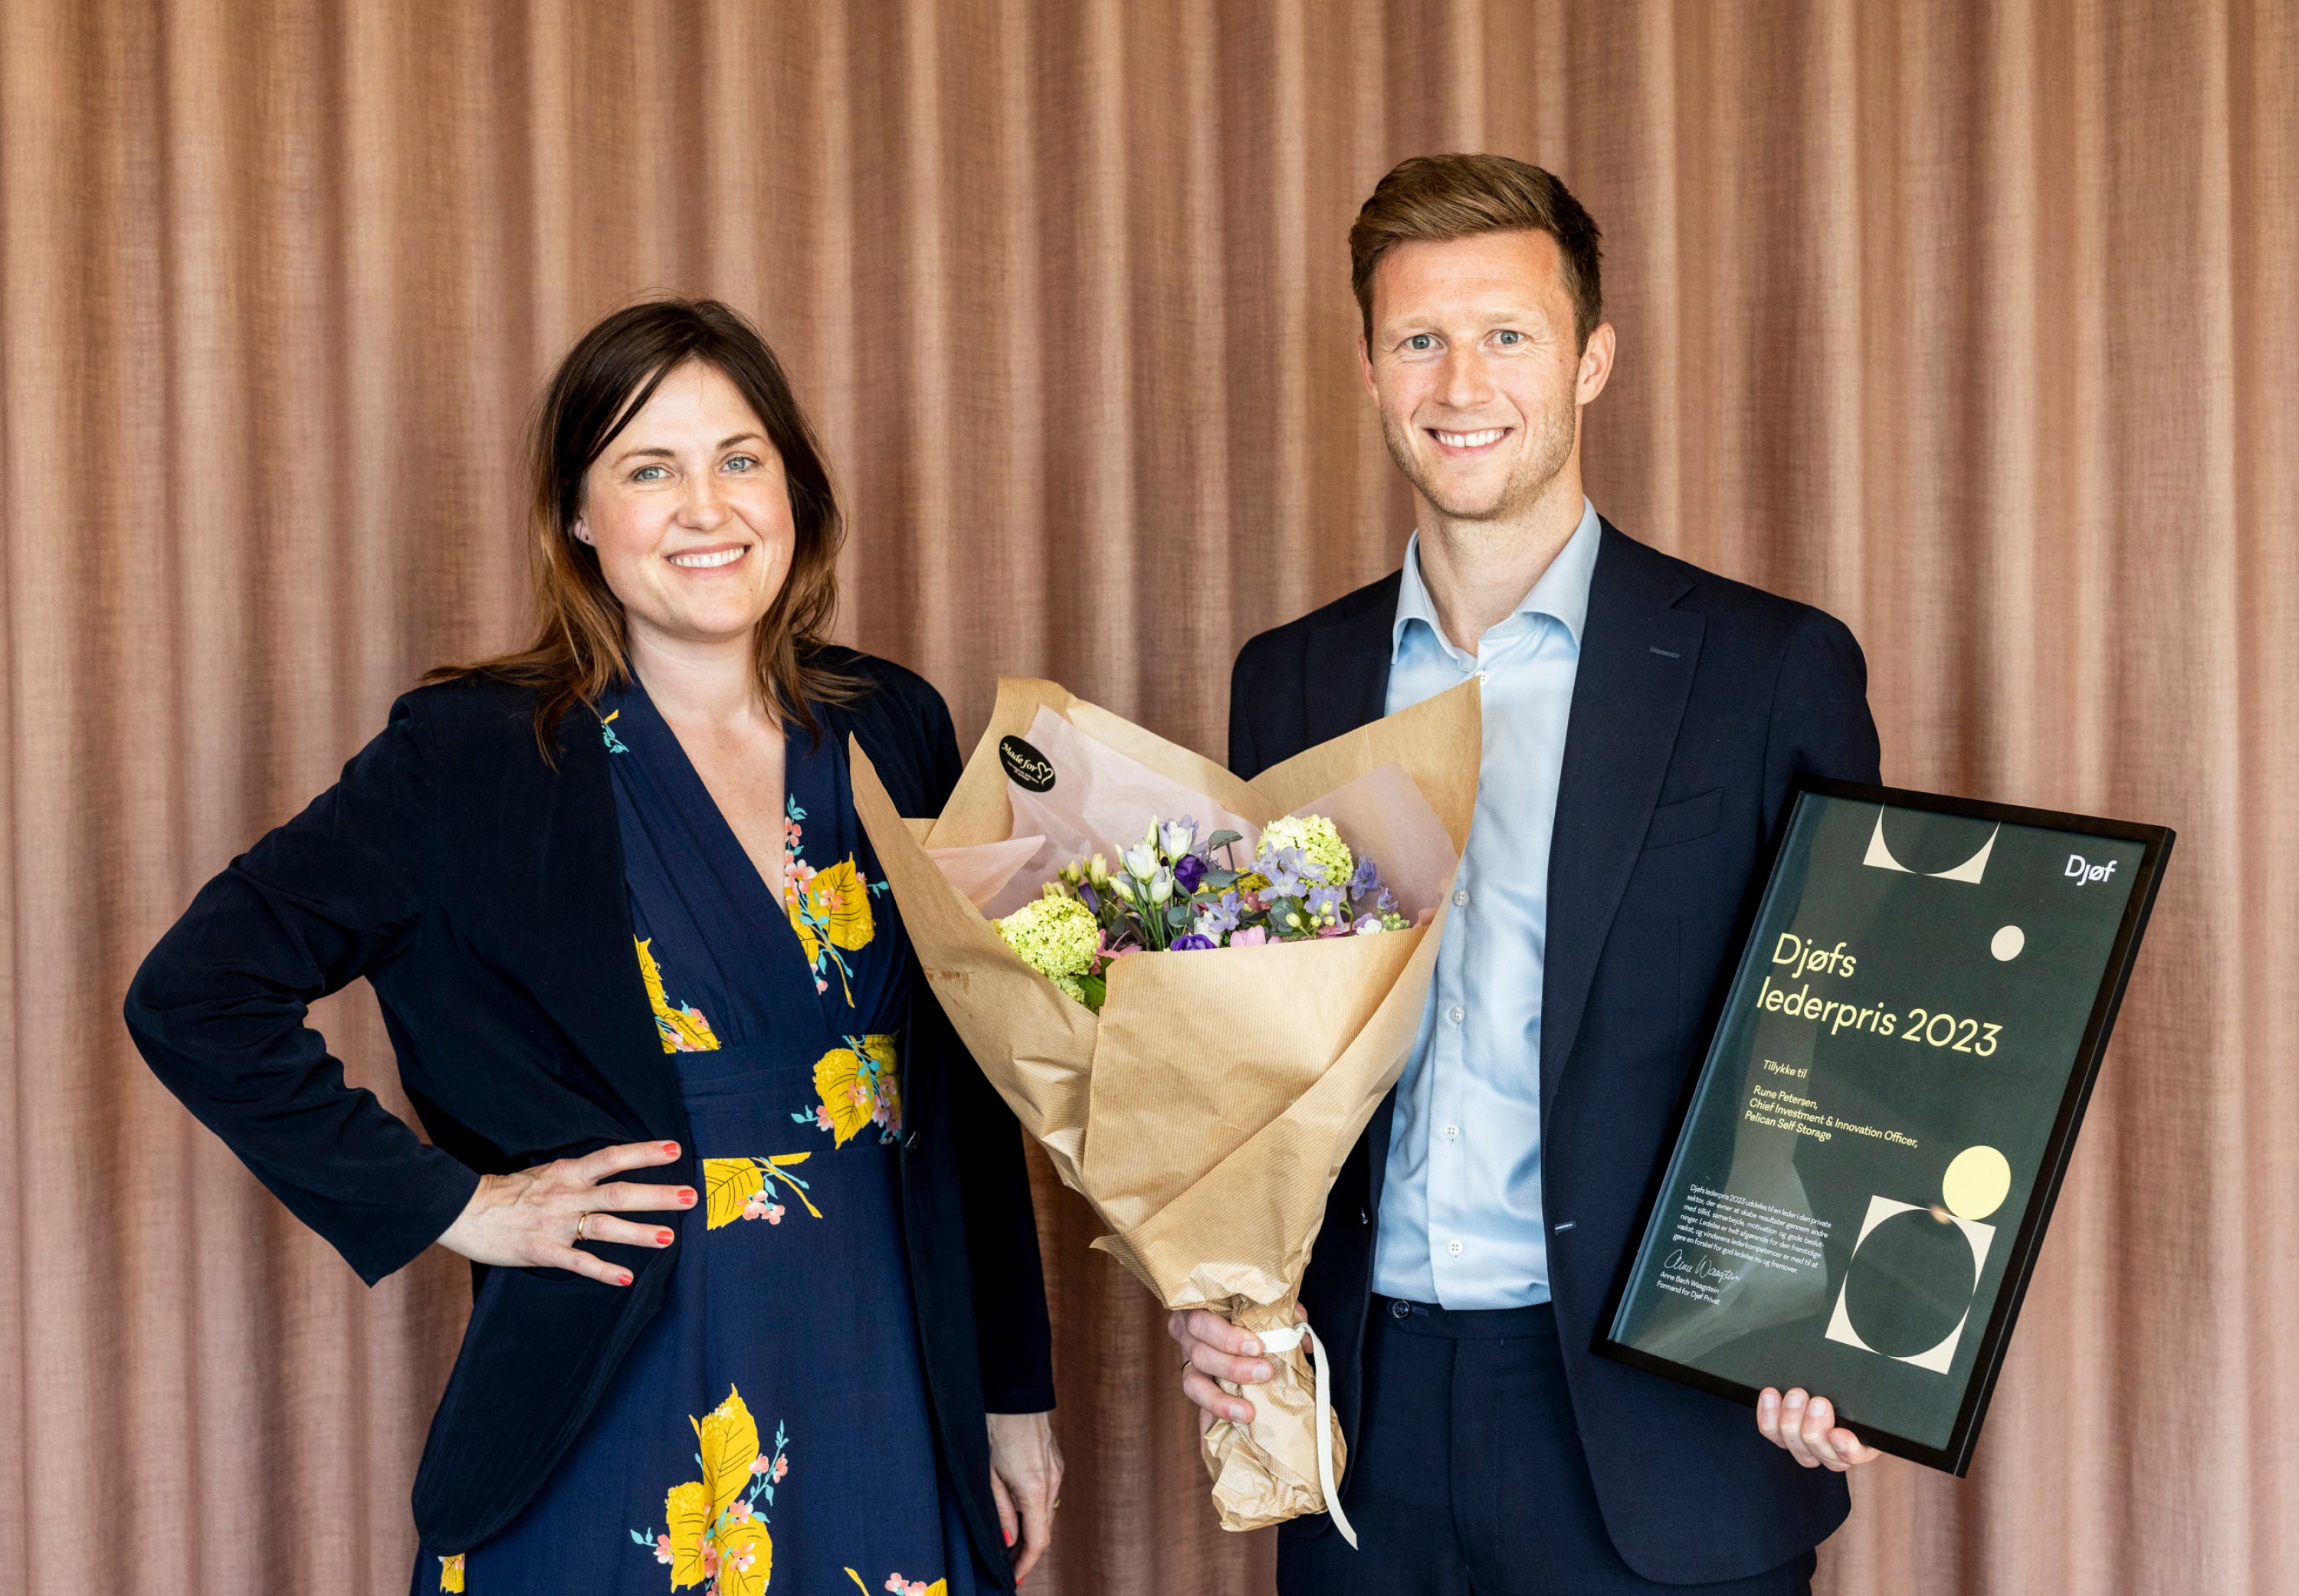 Foto af Rune Pedersen, vinder af Djøfs lederpris, sammen med Anne Bach Waagstein, formand for Djøf Privat